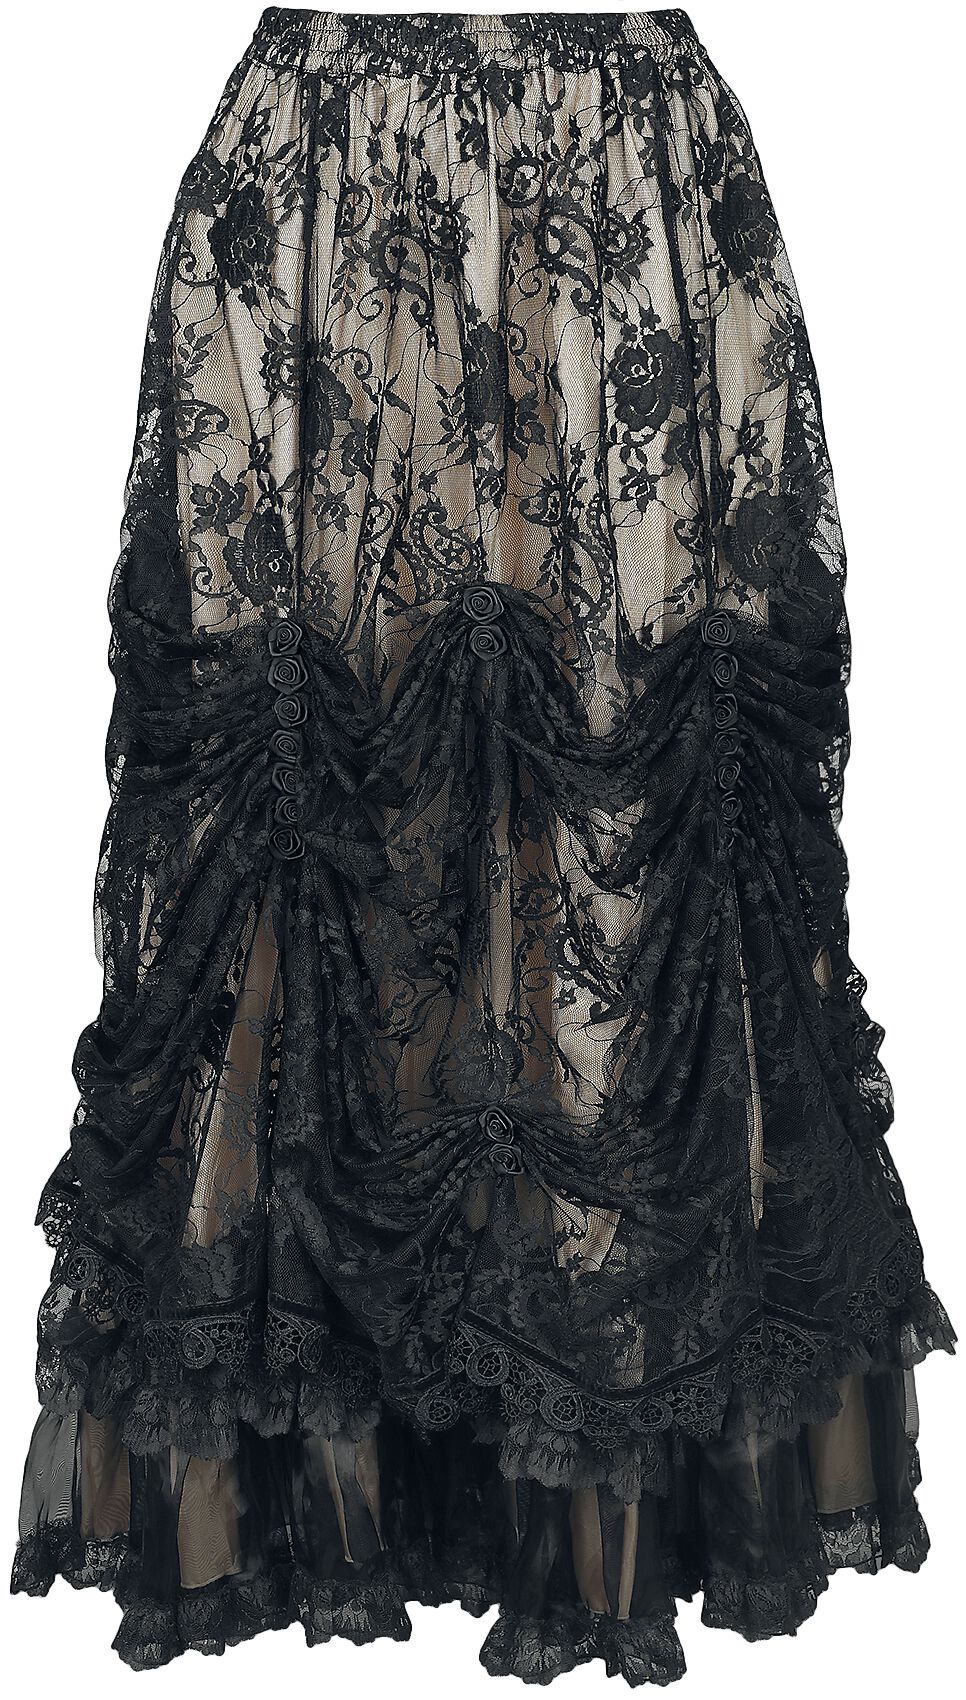 Sinister Gothic Mittelalter Langer Rock Gothic Skirt M für Damen Größe M schwarz beige  - Onlineshop EMP